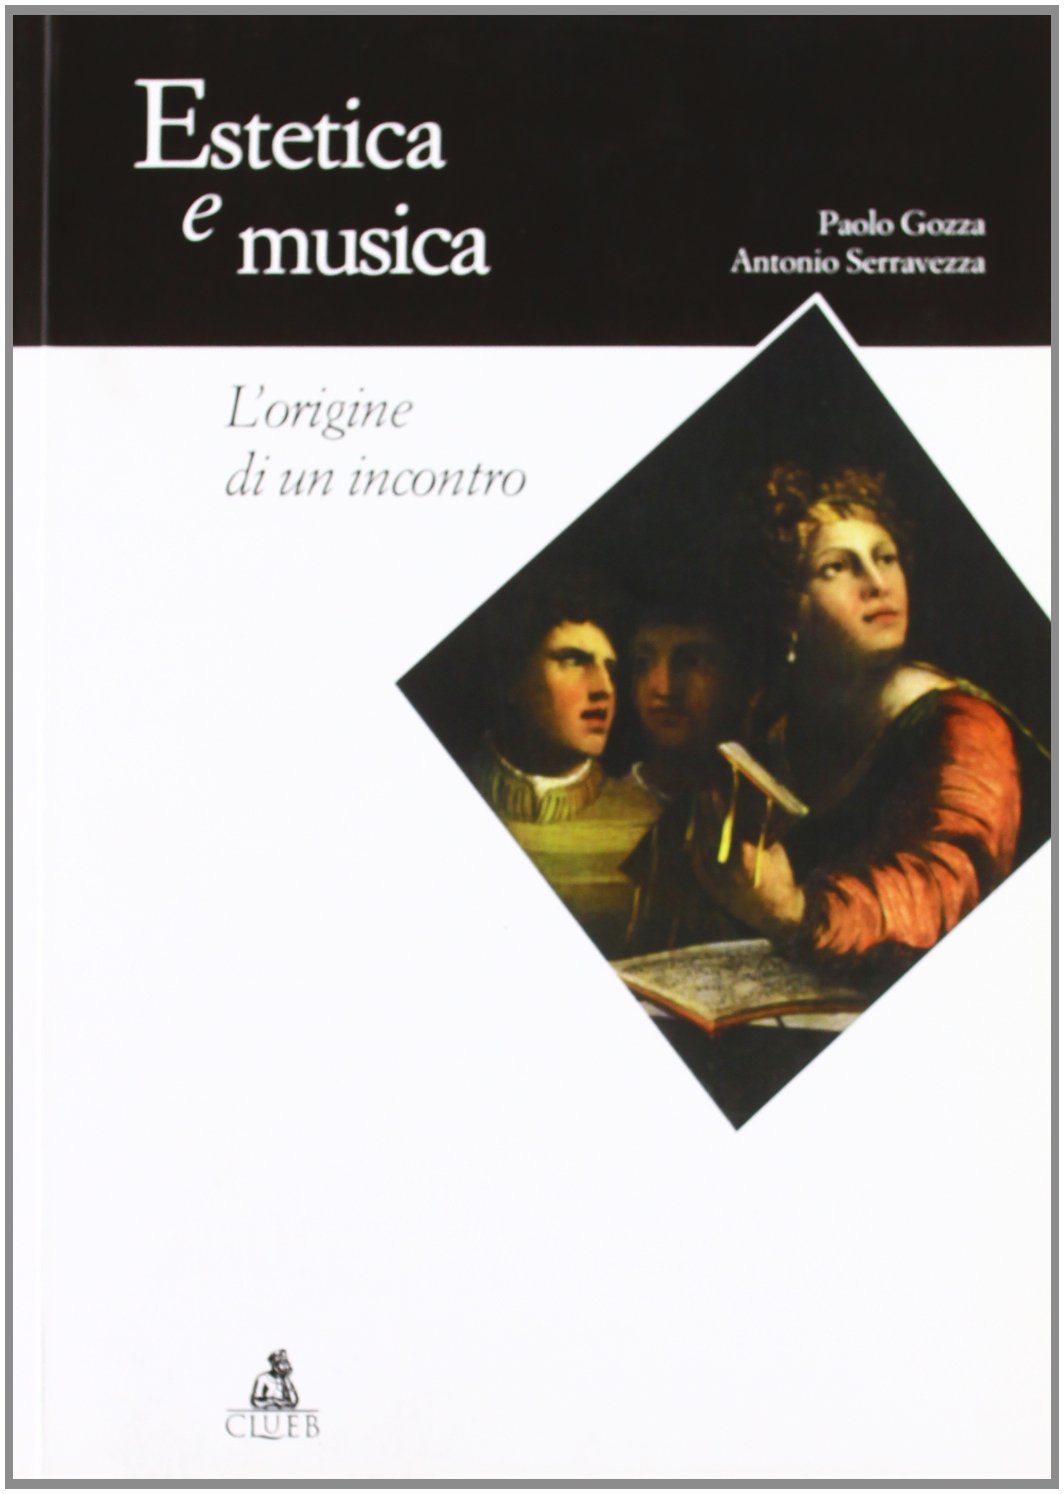 Libri Paolo Gozza / Antonio Serravezza - Estetica E Musica. L'Origine Di Un Incontro NUOVO SIGILLATO, EDIZIONE DEL 01/01/2004 SUBITO DISPONIBILE